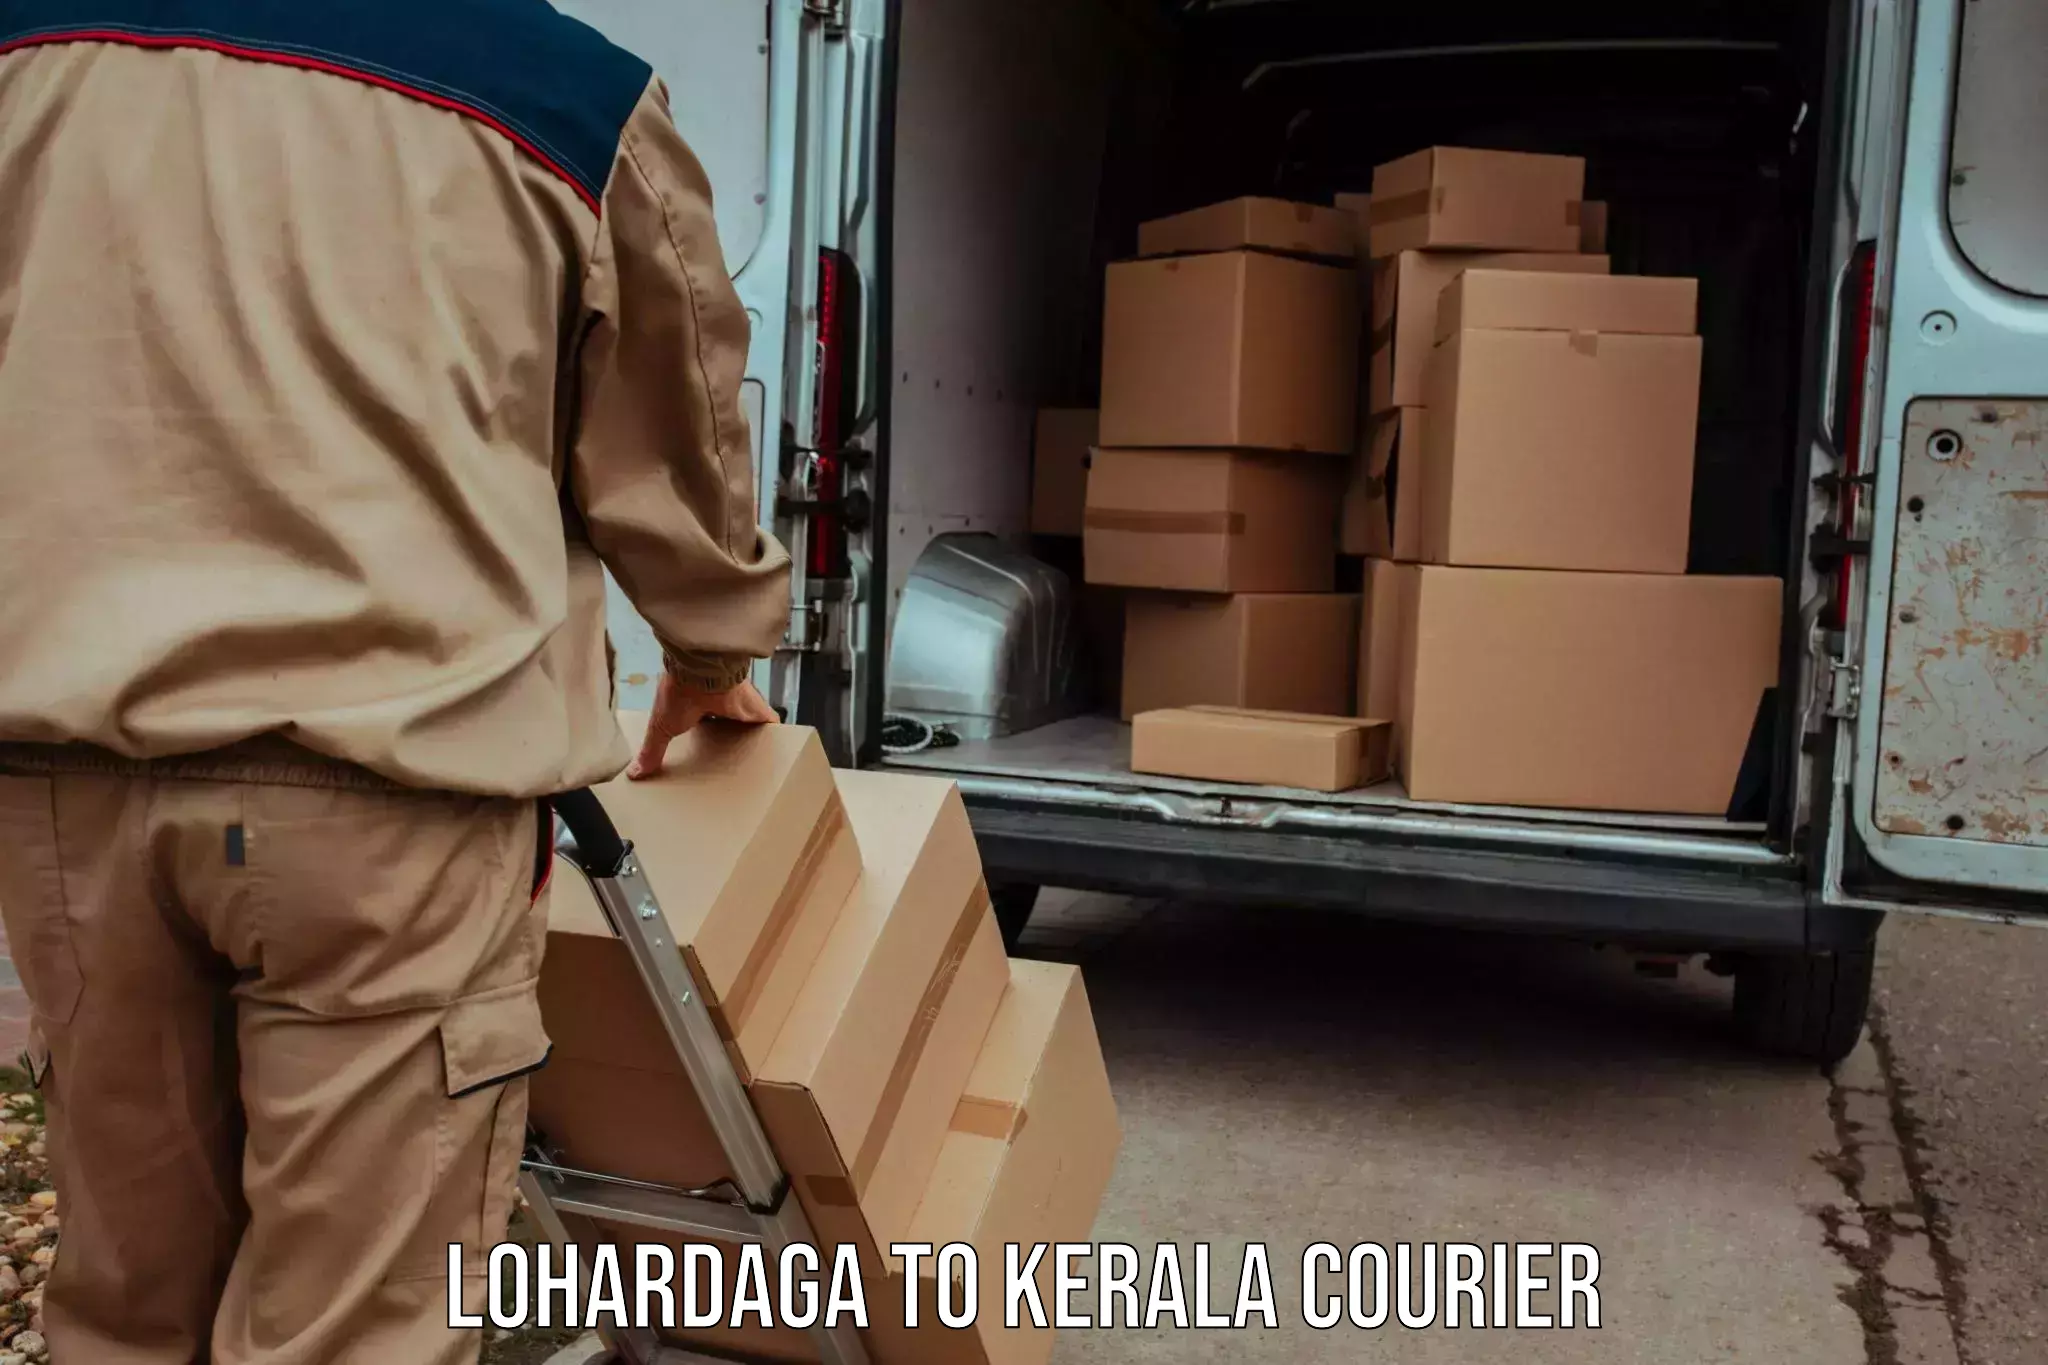 Global shipping solutions Lohardaga to Mahe